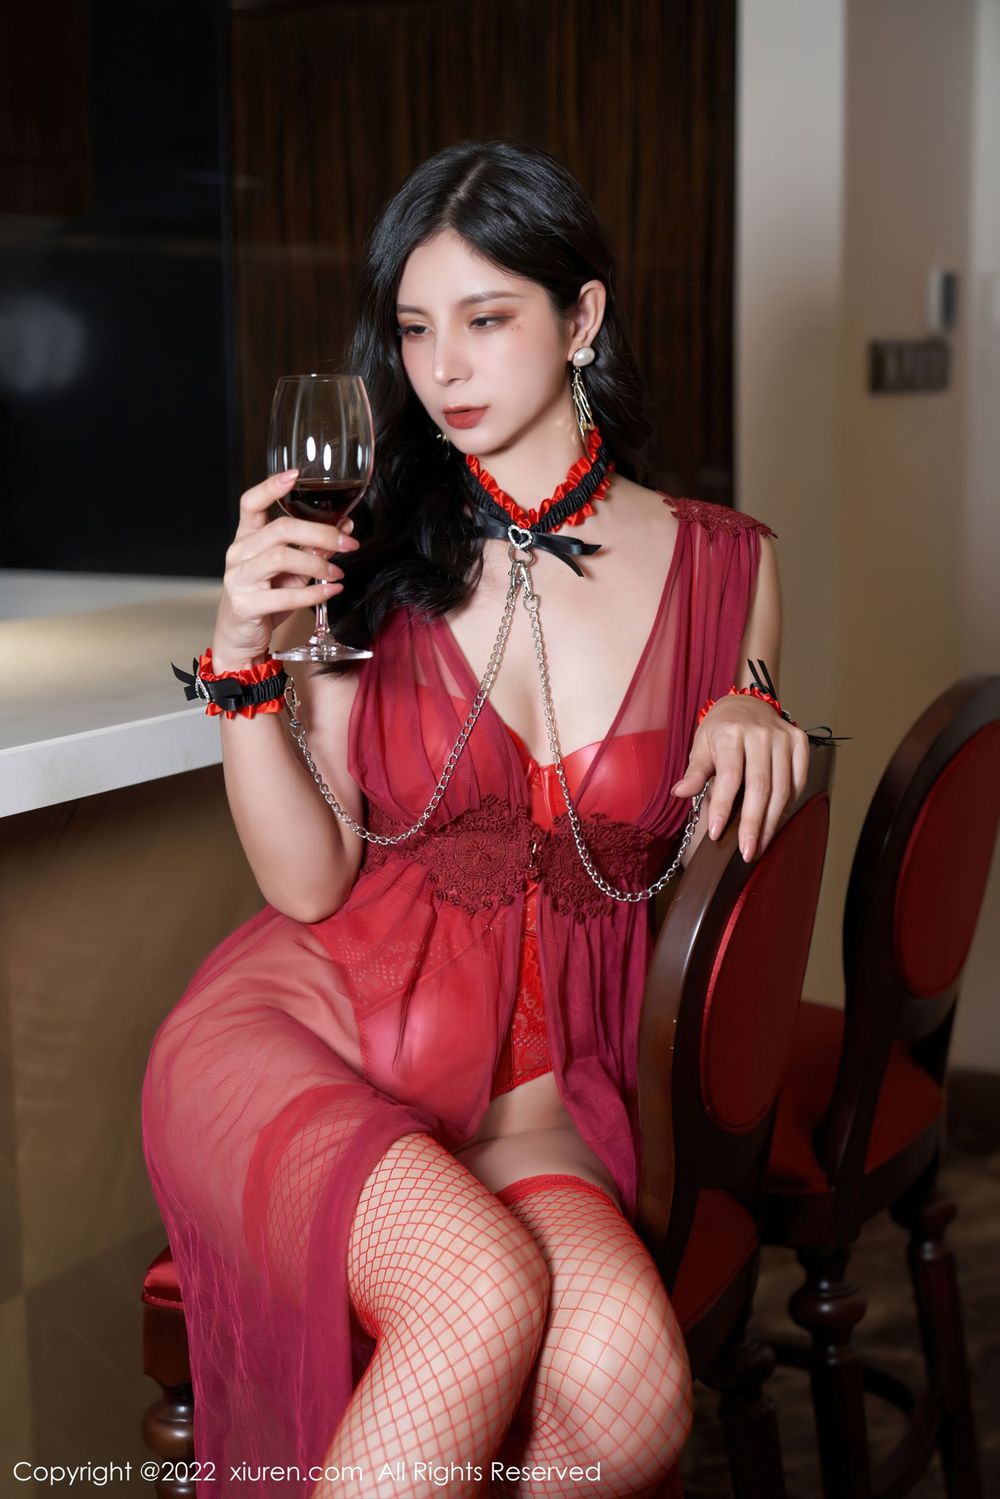 美女模特小蛮妖Yummy - 红色皮质情趣制服系列写真